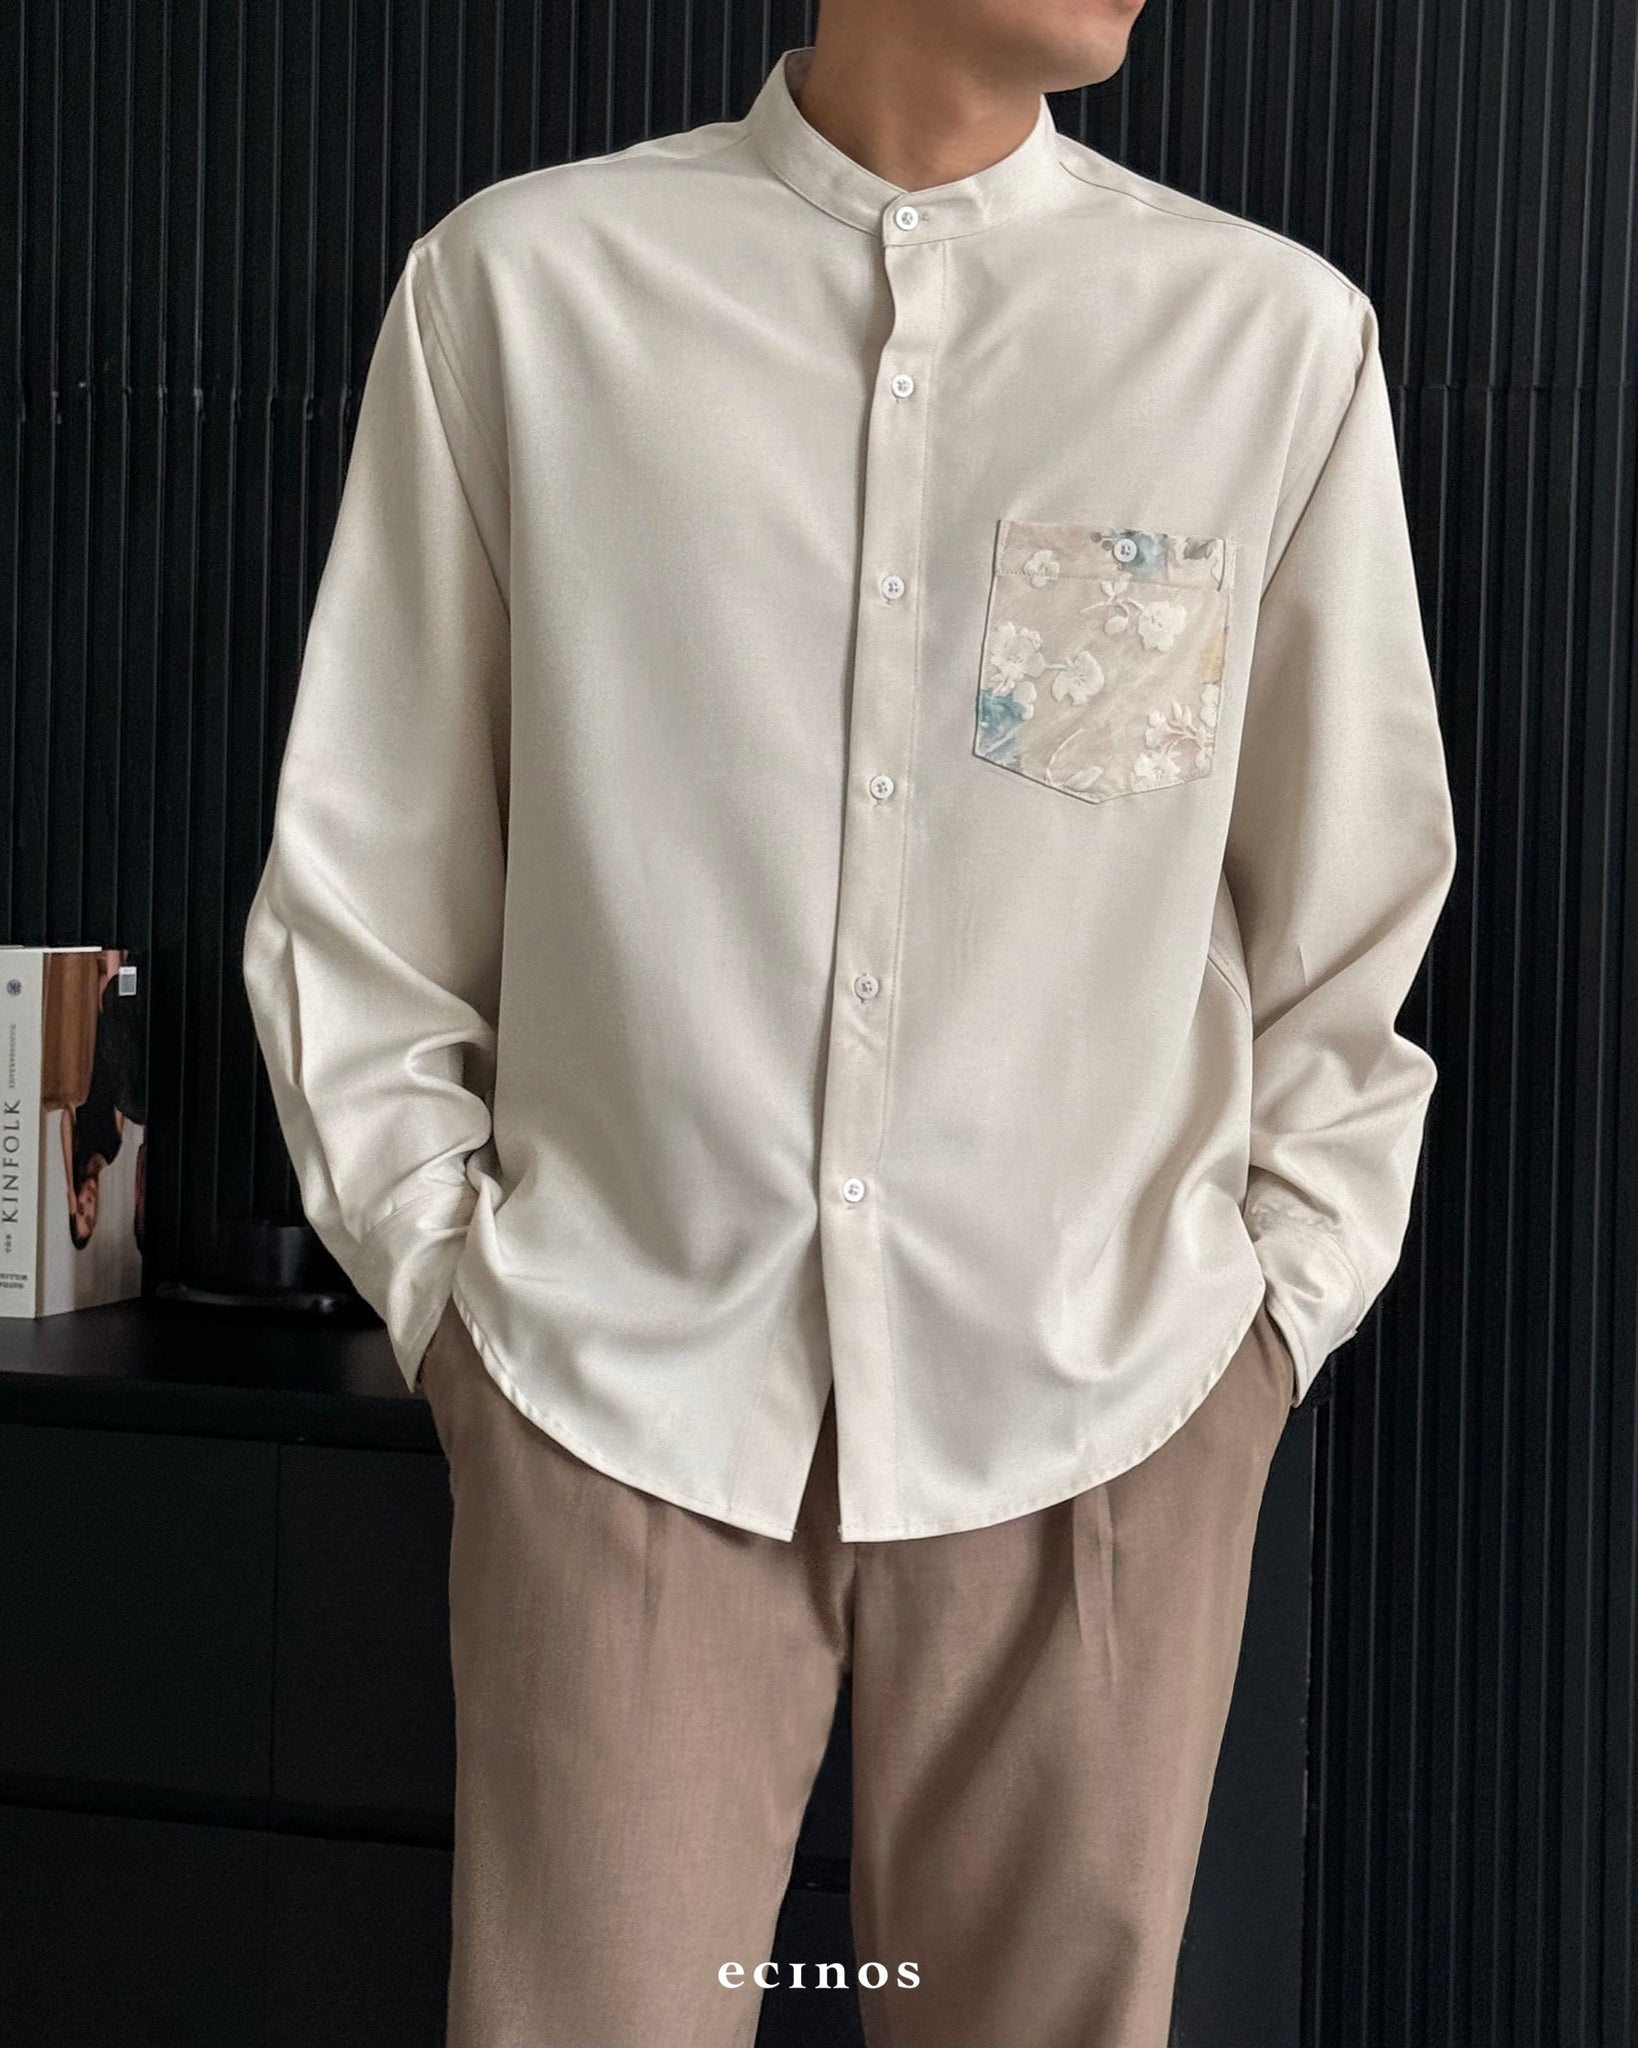 ECINOS Man - Mandarin Collar Shirt